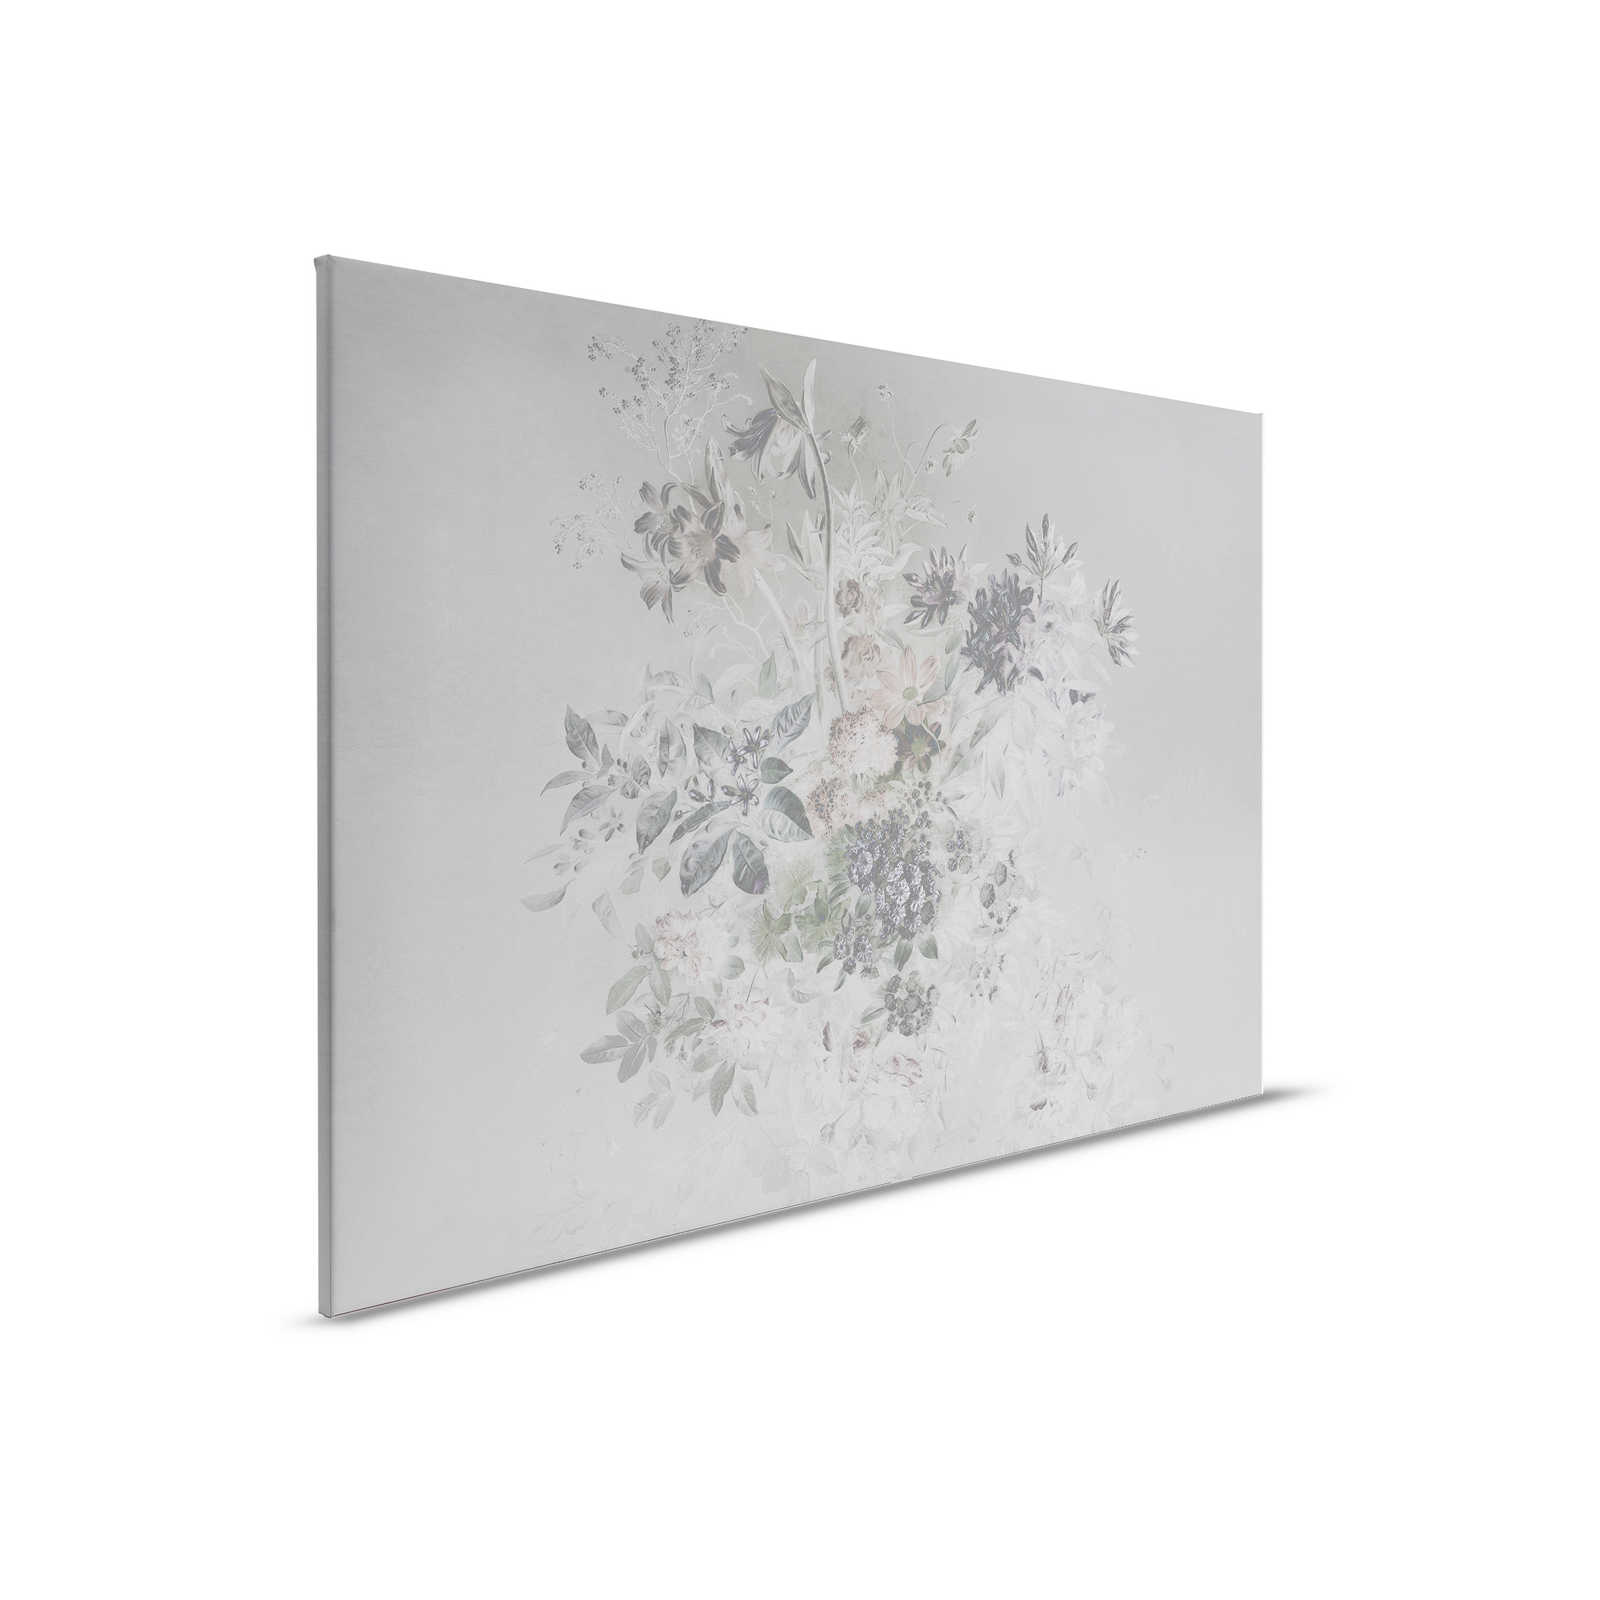         Canvas painting romantic flowers design - 0,90 m x 0,60 m
    